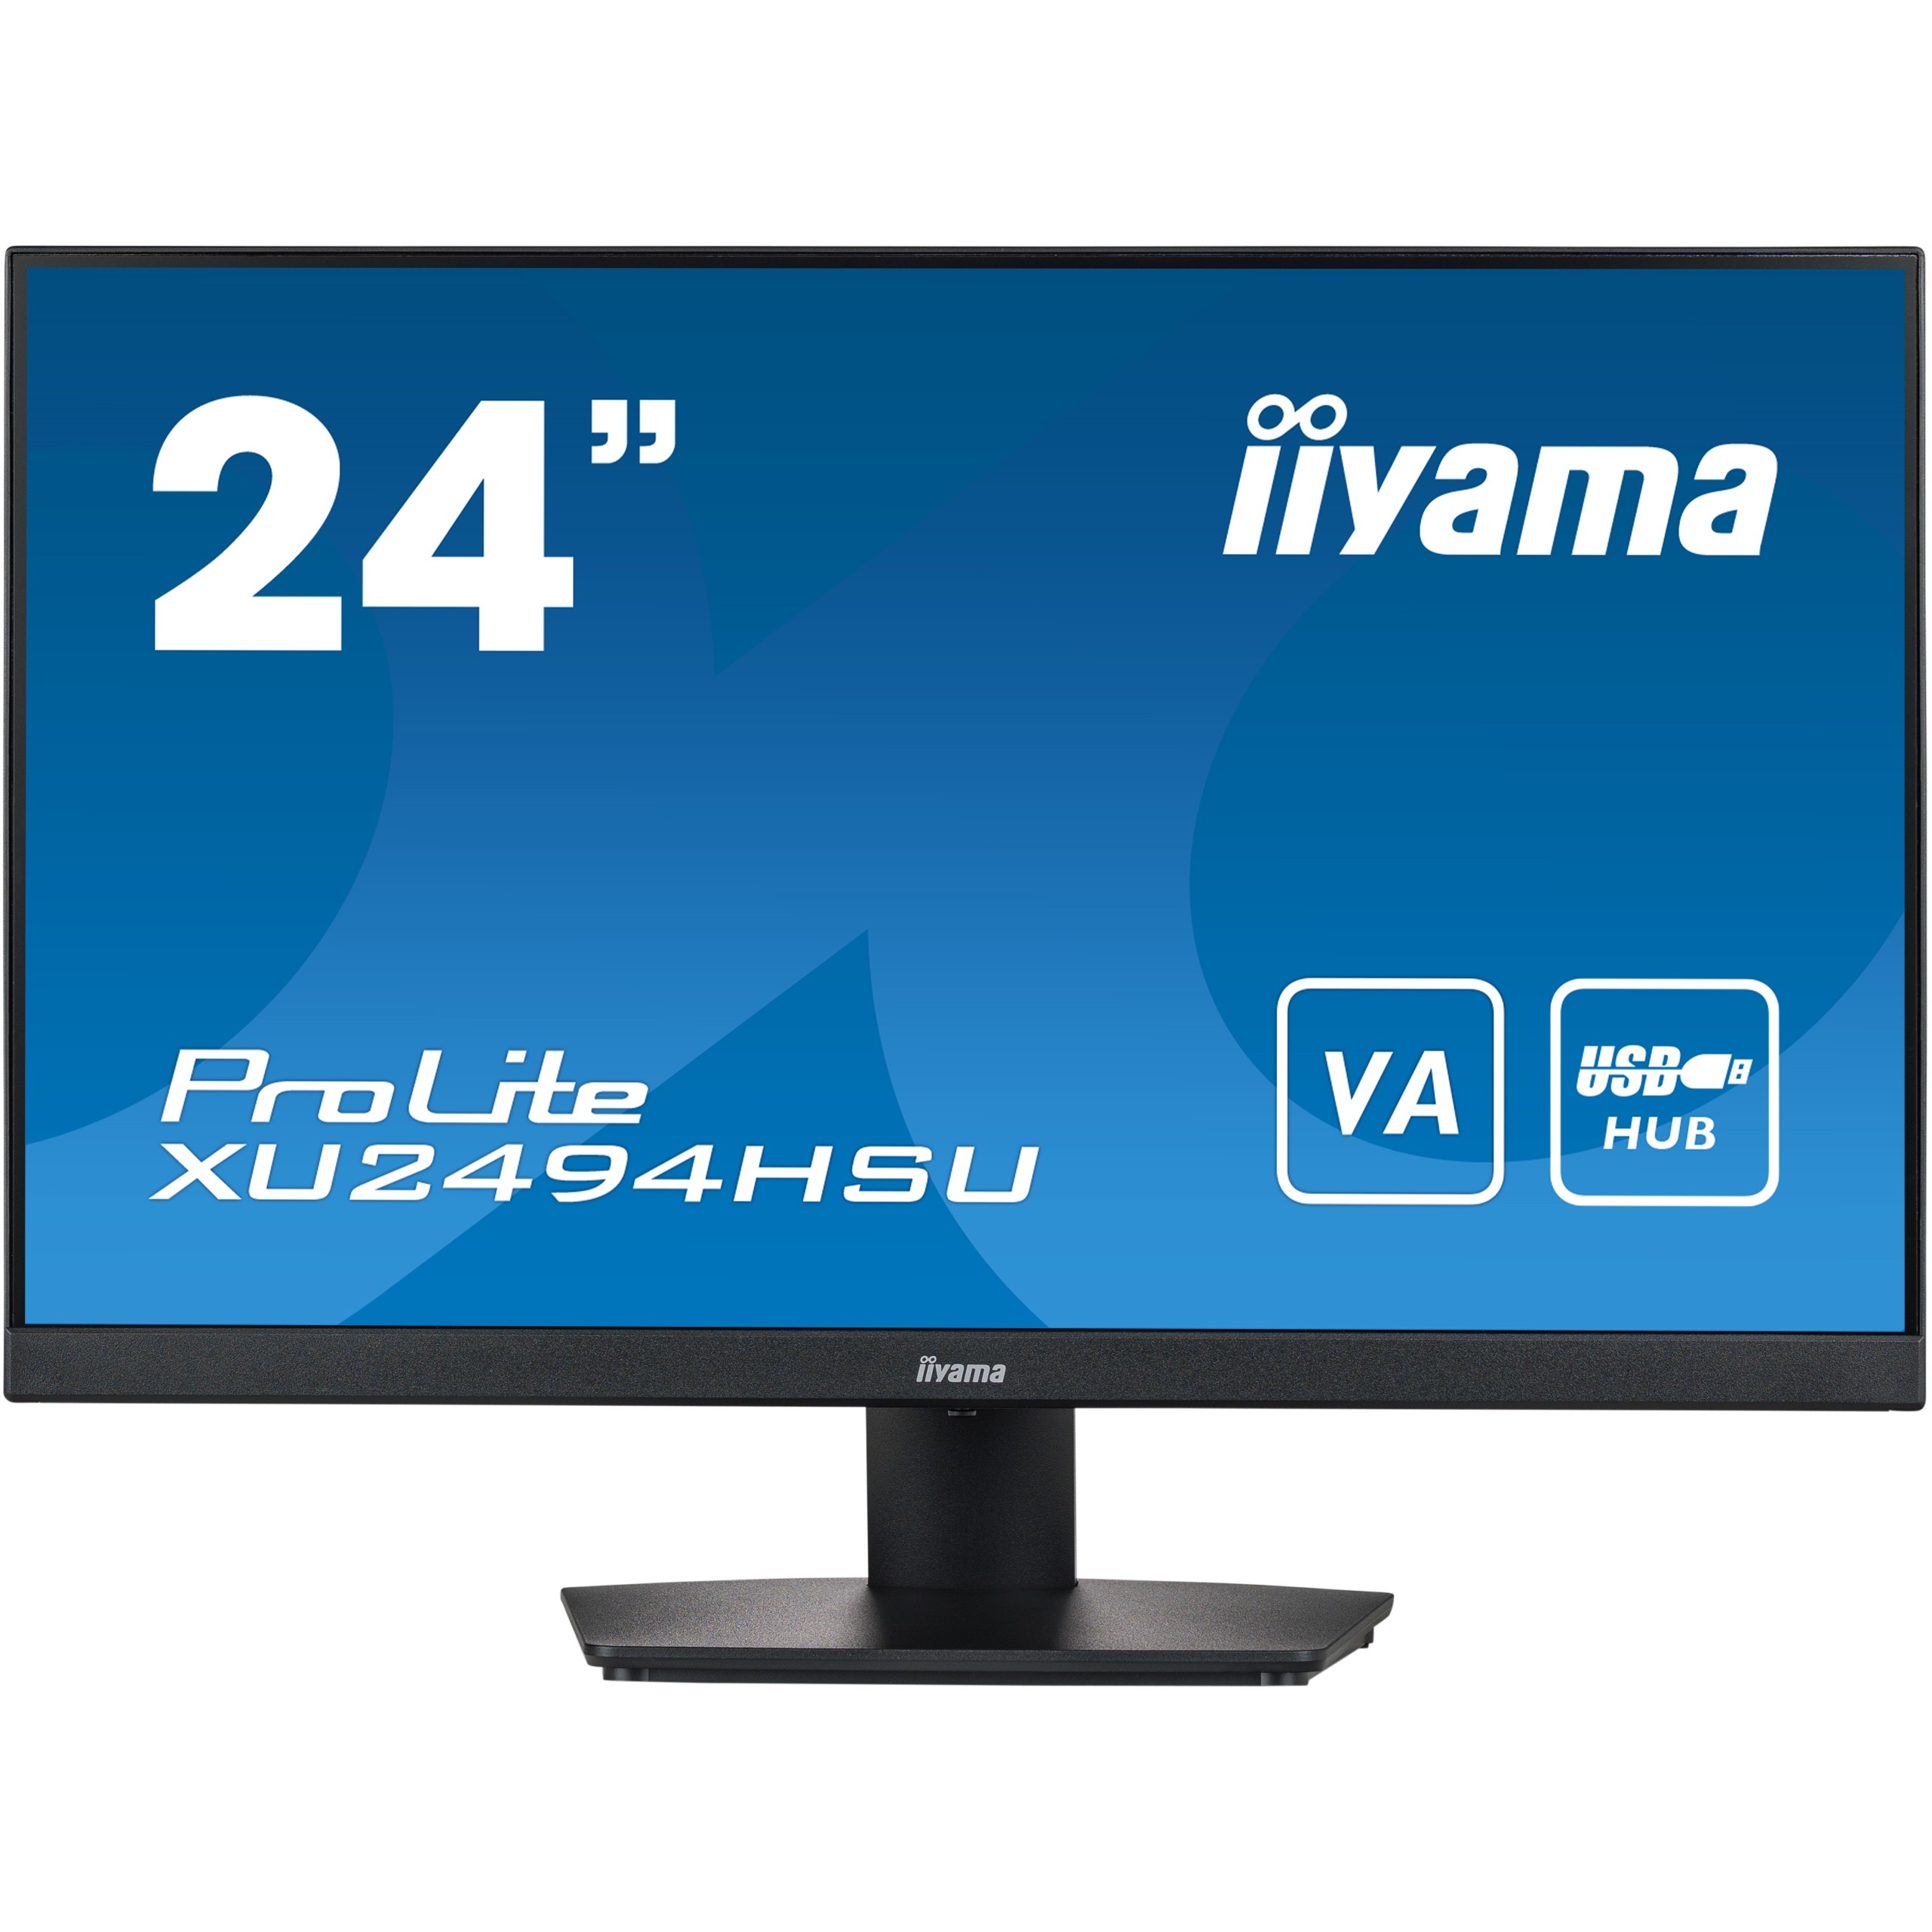 iiyama ProLite XU2494HSU-B2 computer monitor